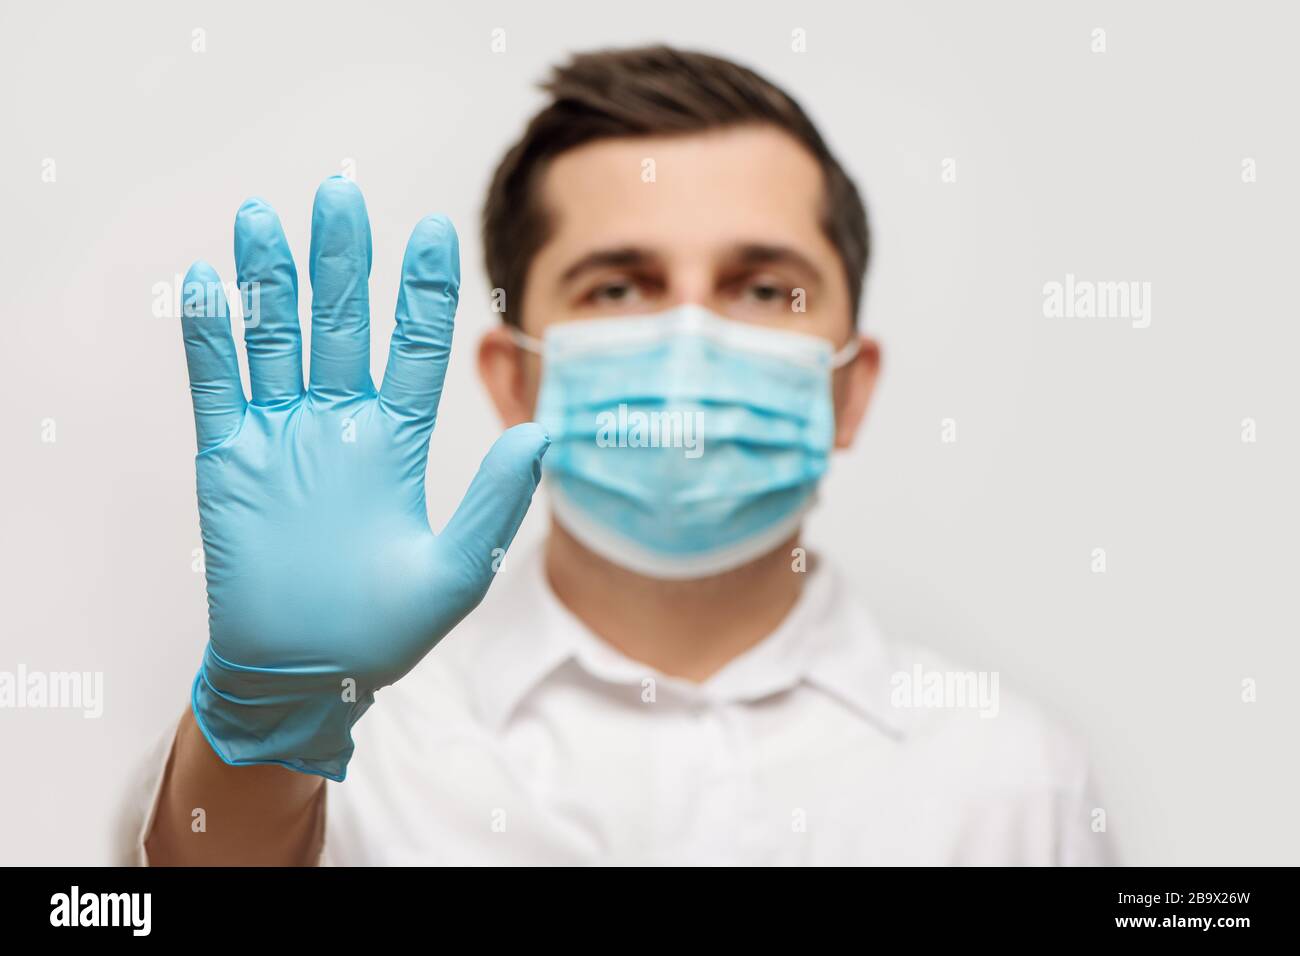 Ritratto del medico in uniforme medica con maschera facciale protettiva blu e una mano con guanti che mostra un segnale di stop. Interrompere il concetto COVID-19. Foto Stock